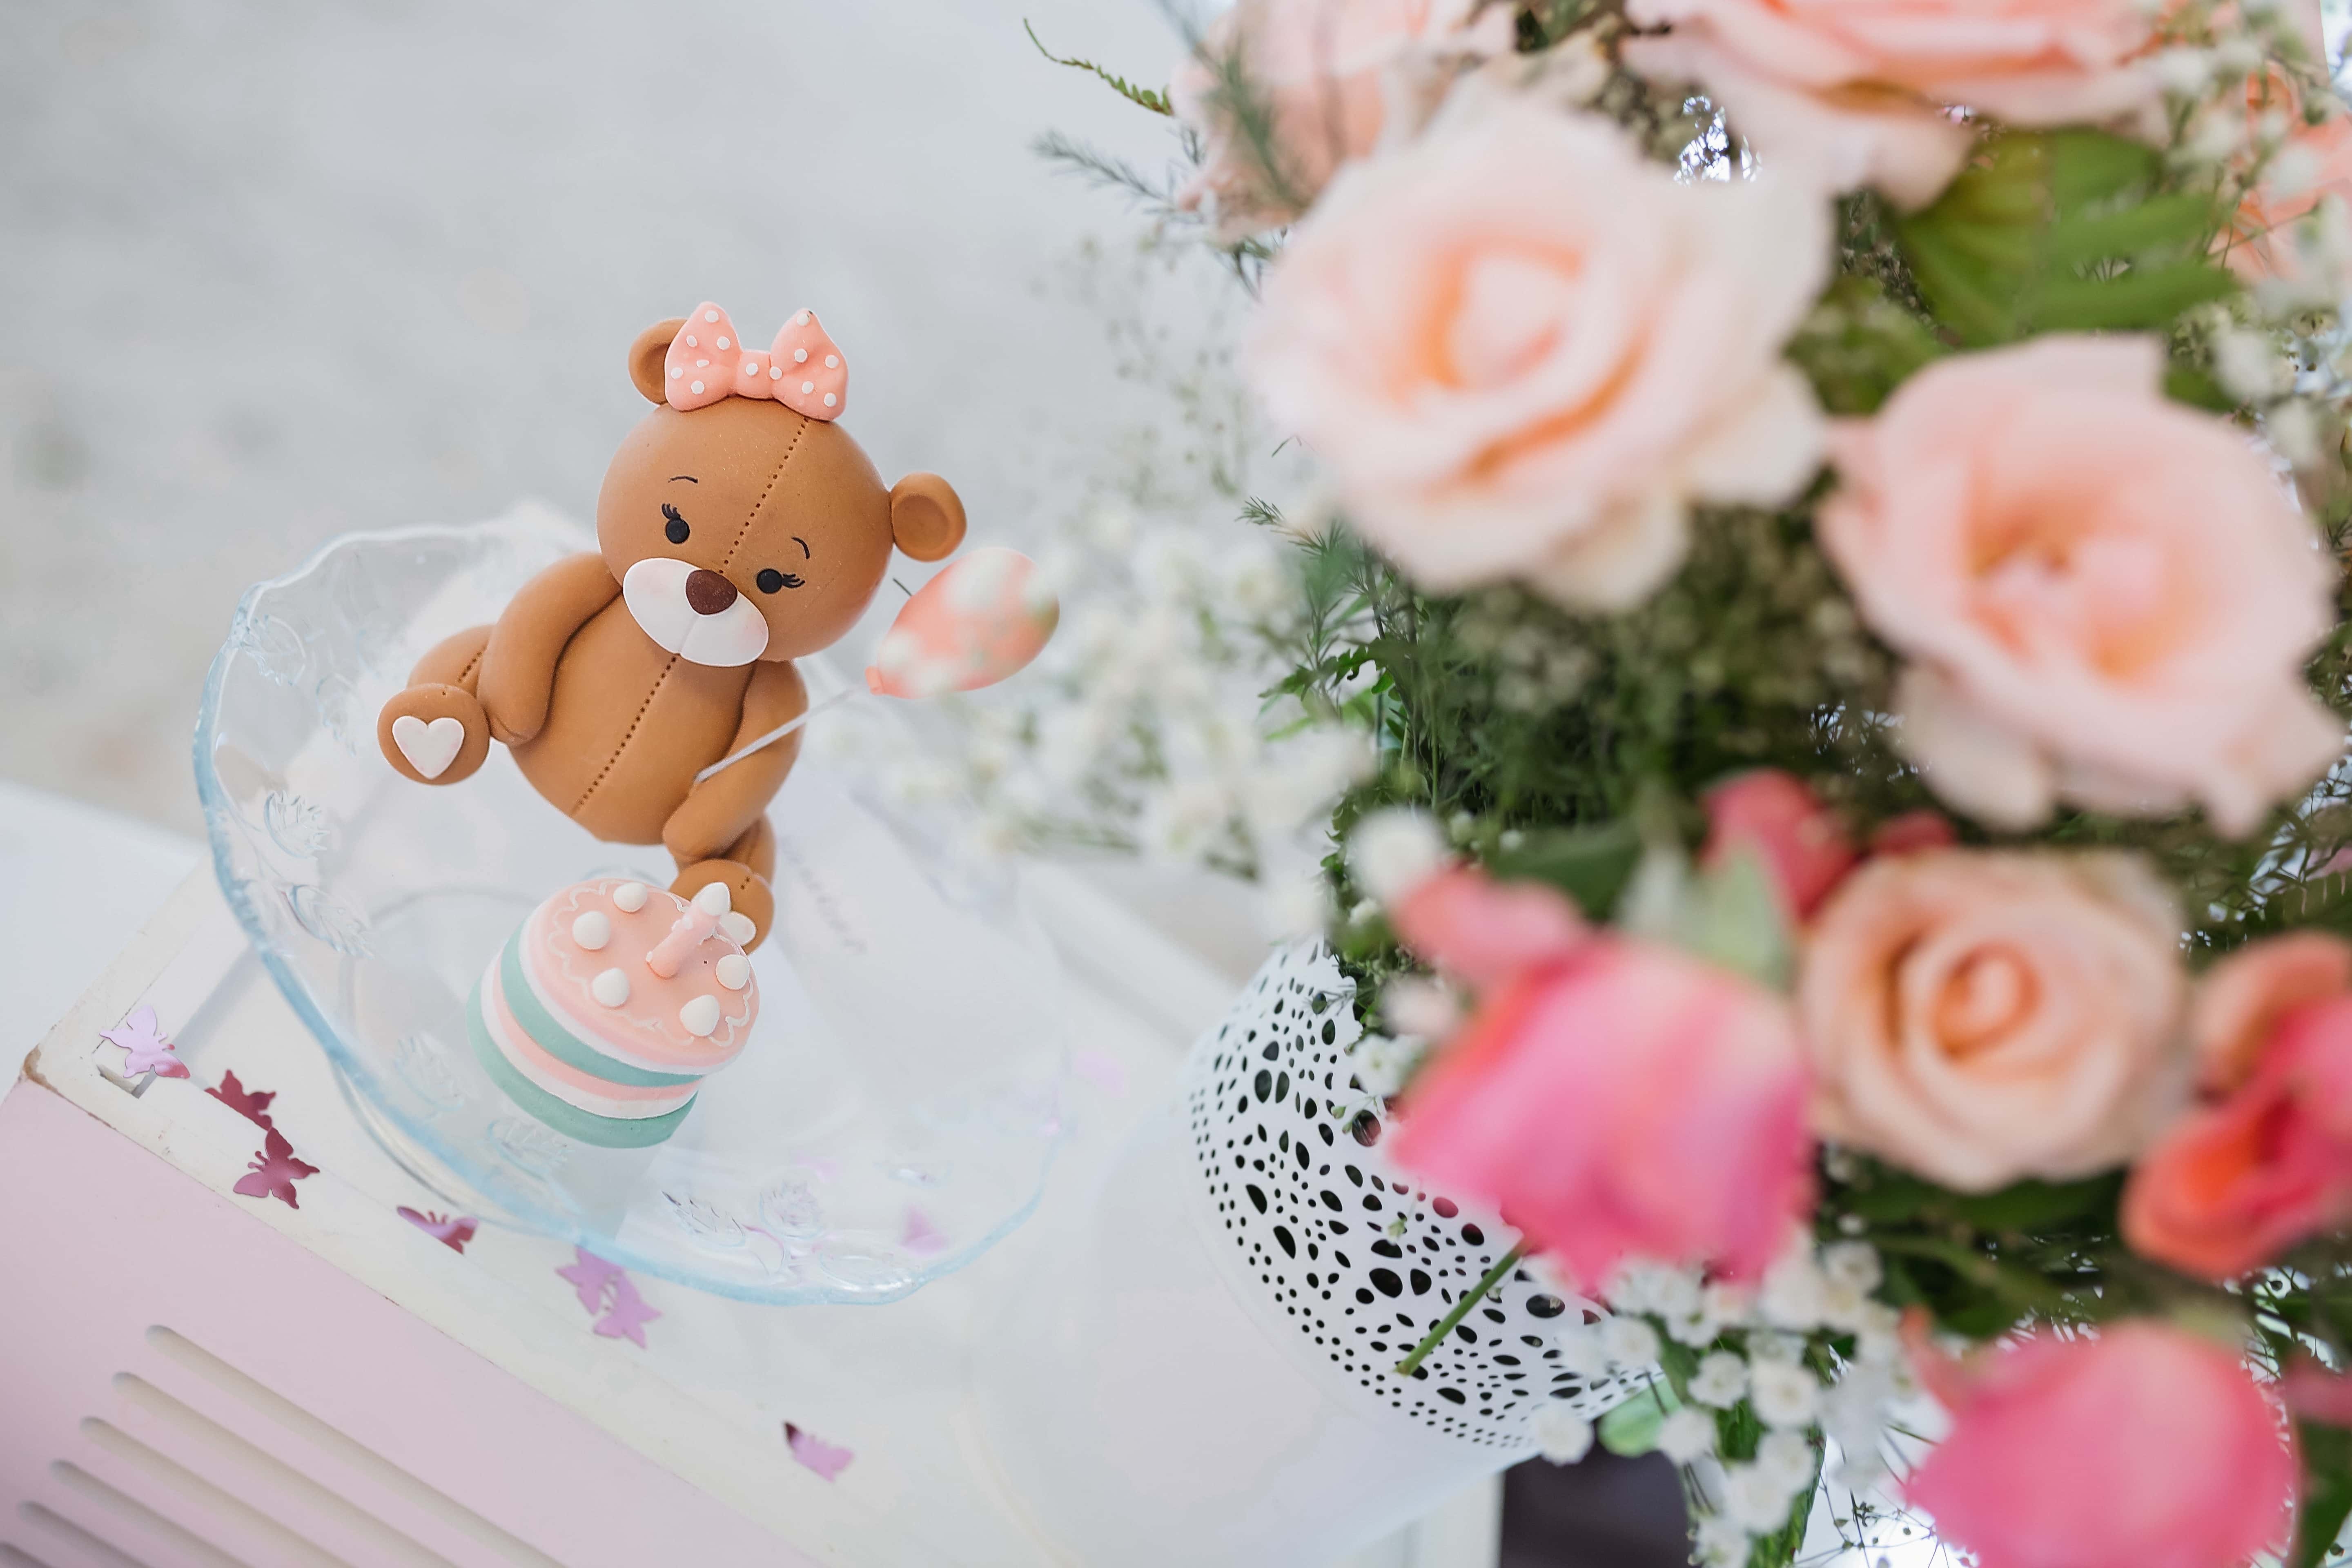 Kostenlose Bild: Geburtstagskuchen, Teddybär Spielzeug, Blumenstrauß ...